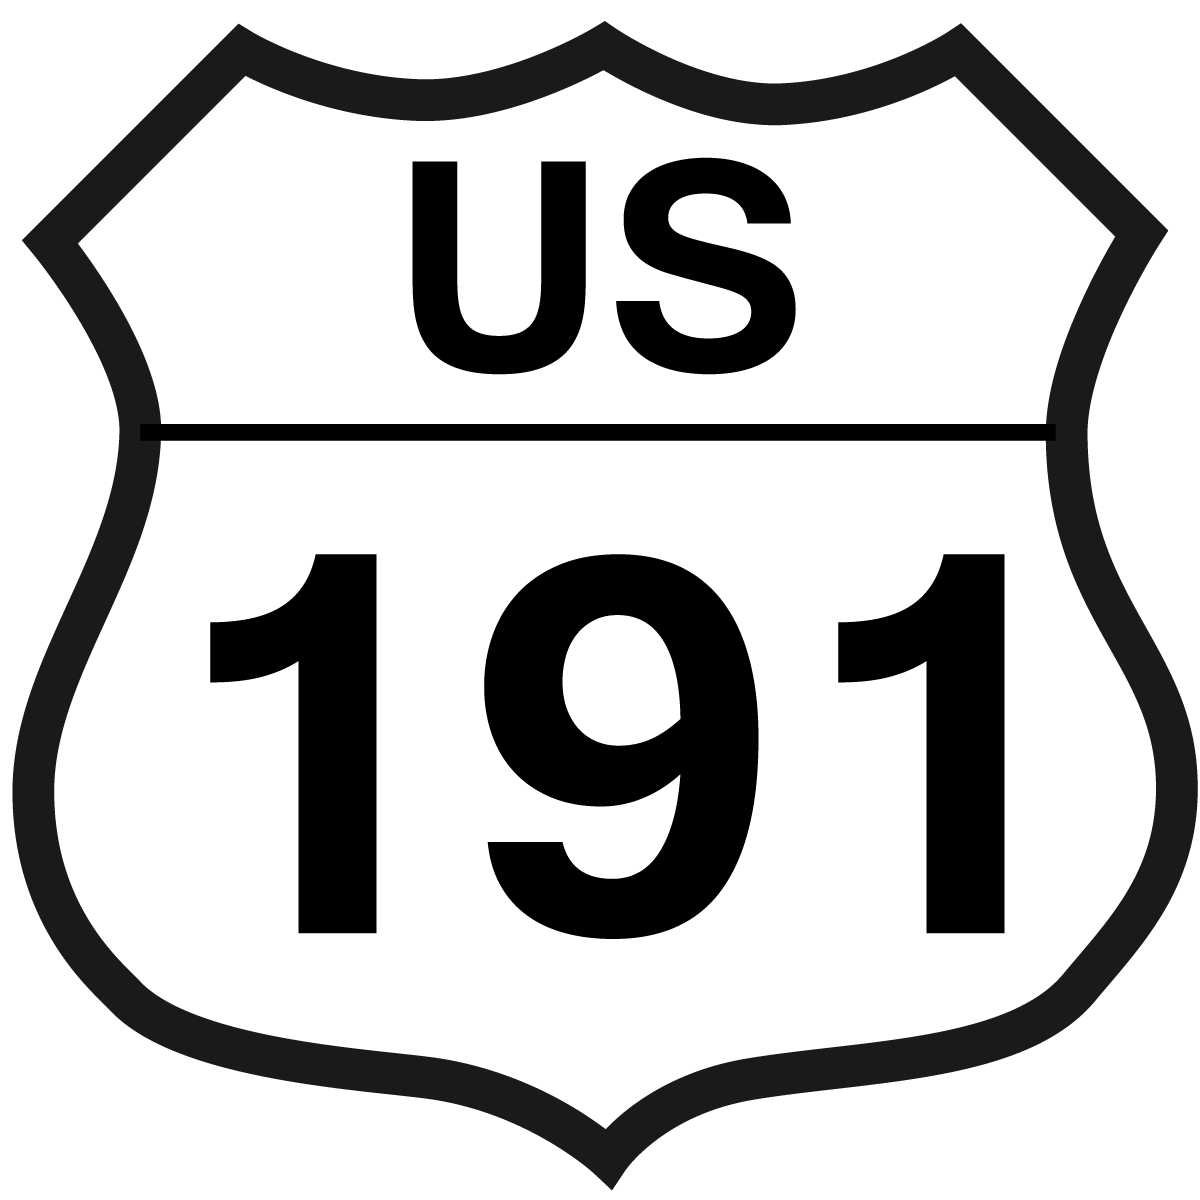 US 191